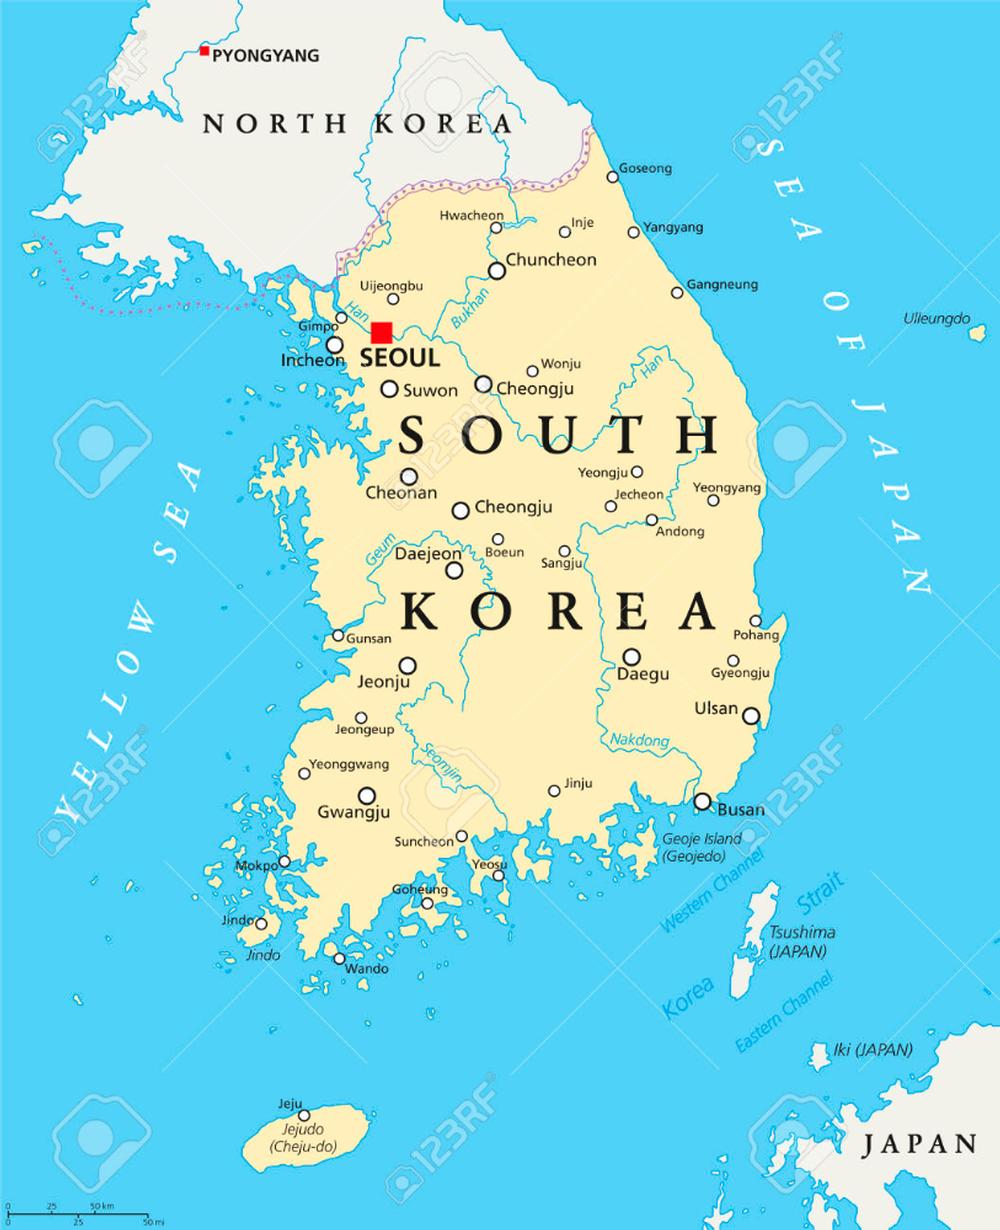 Seoul, SK Map